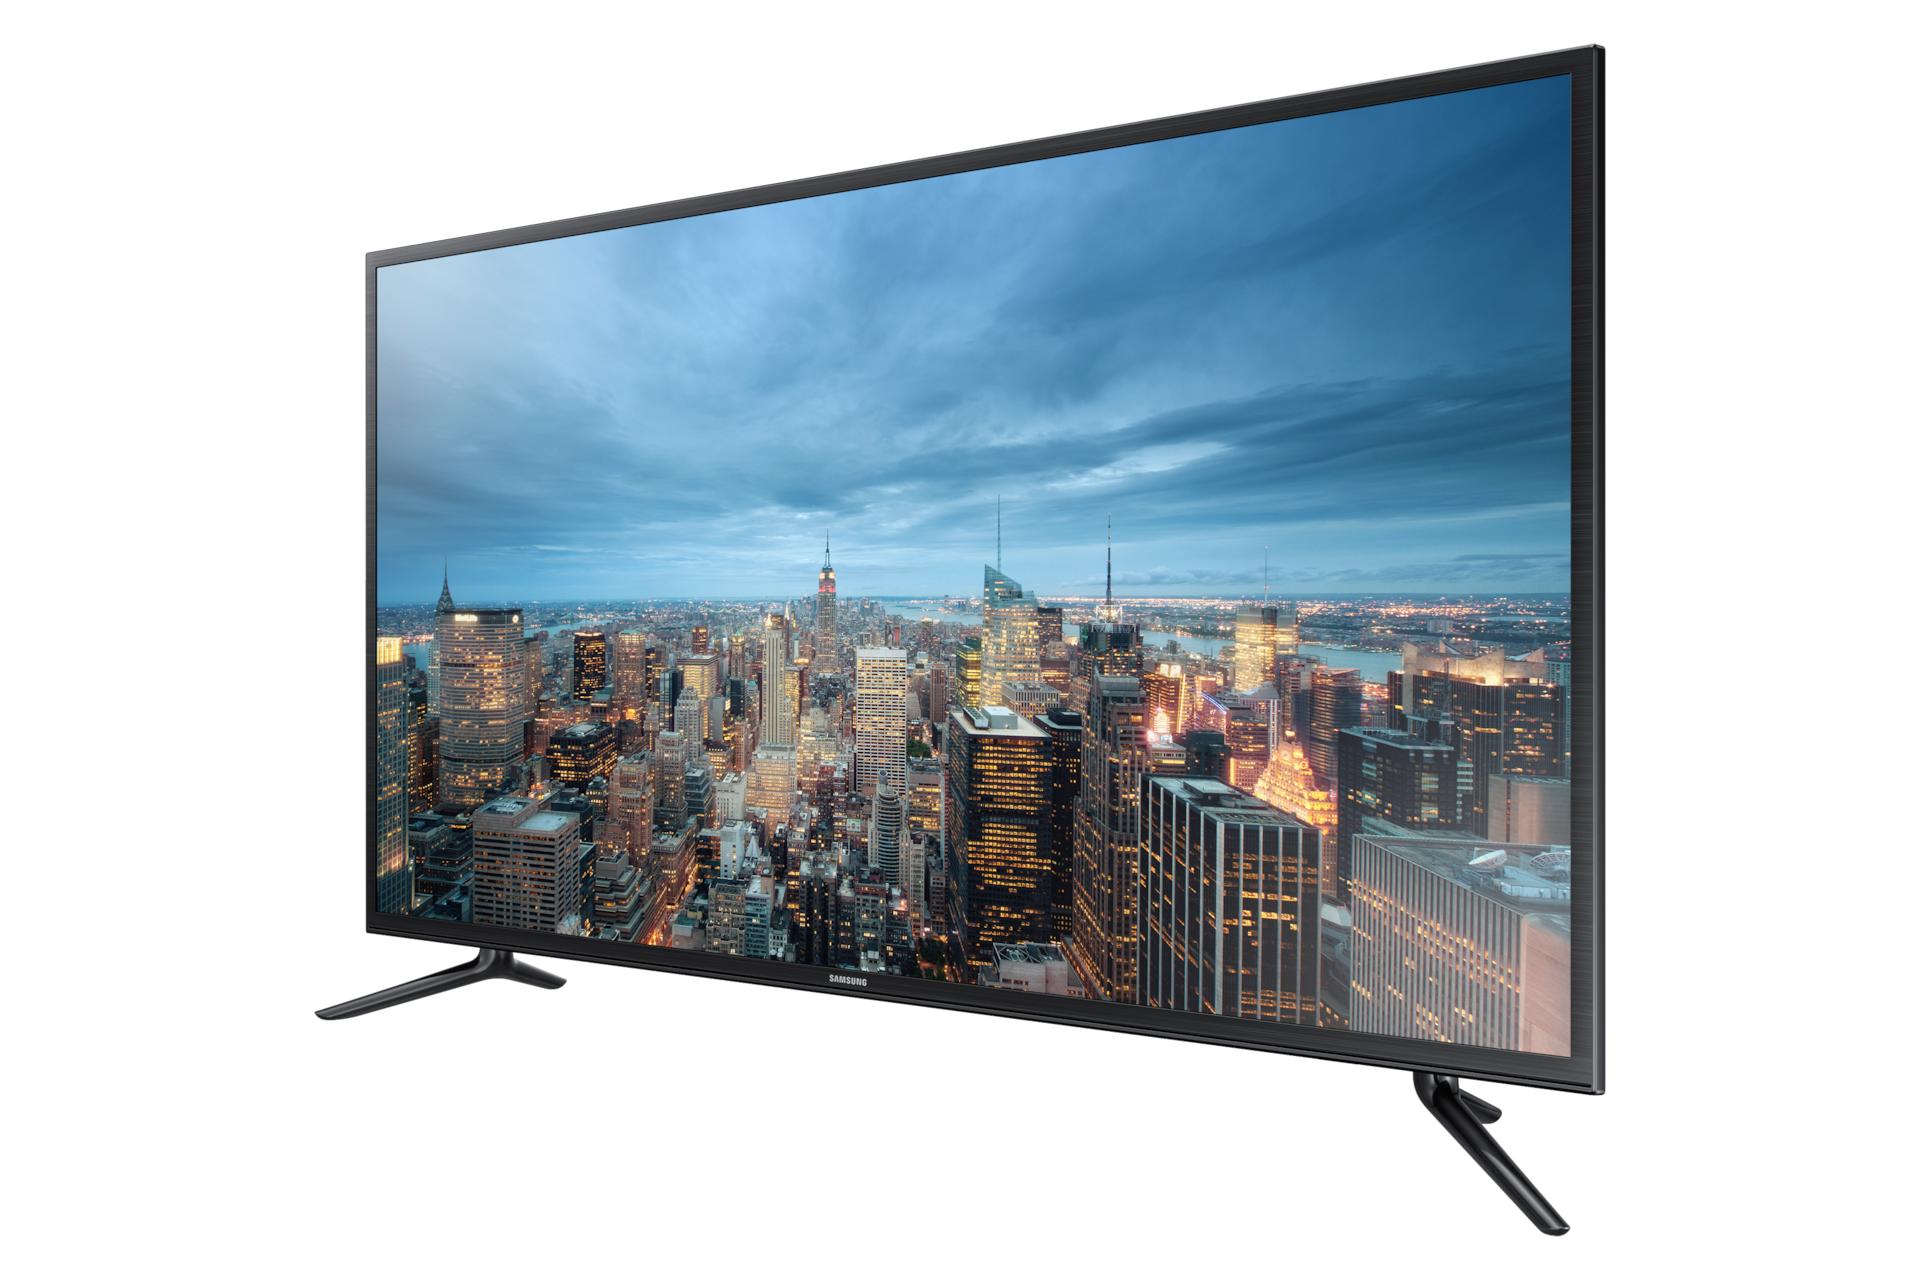 Телевизор цифровой модели. Samsung ue55ju6530u. Samsung ue43ju6000u. Samsung Smart TV 40. Телевизор Samsung ue48ju6000u 48" (2015).